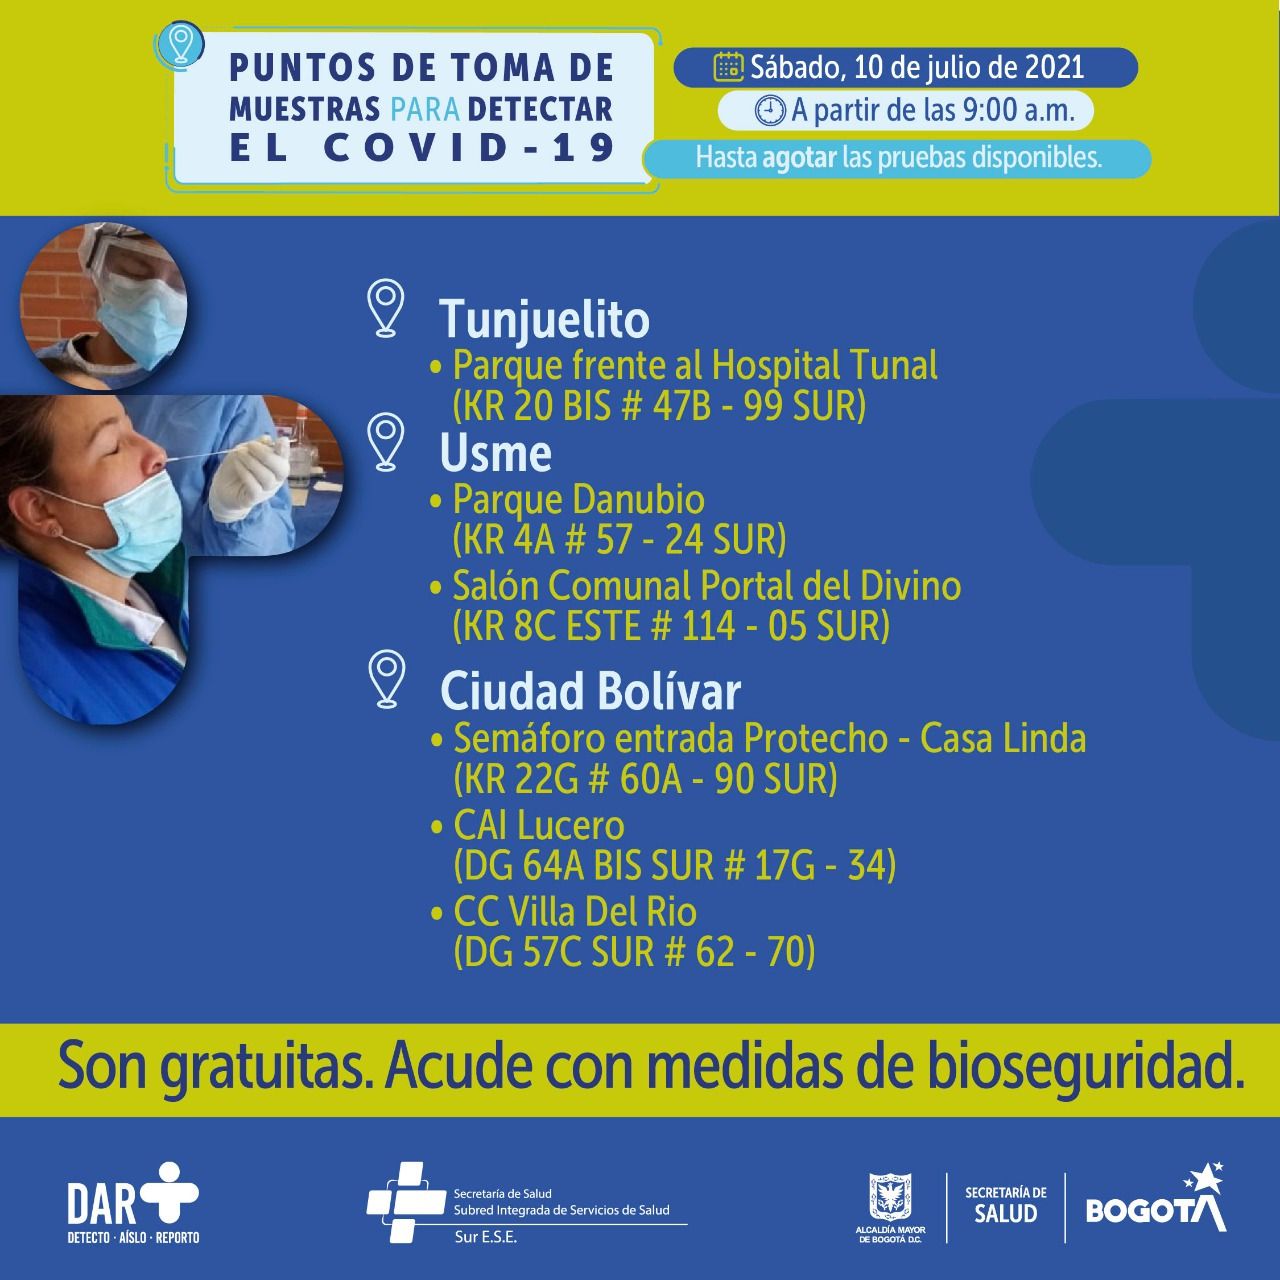 Puntos prueba covid-19 en Bogotá para el 10 de julio Foto: Secretaría Distrital de Salud de Bogotá